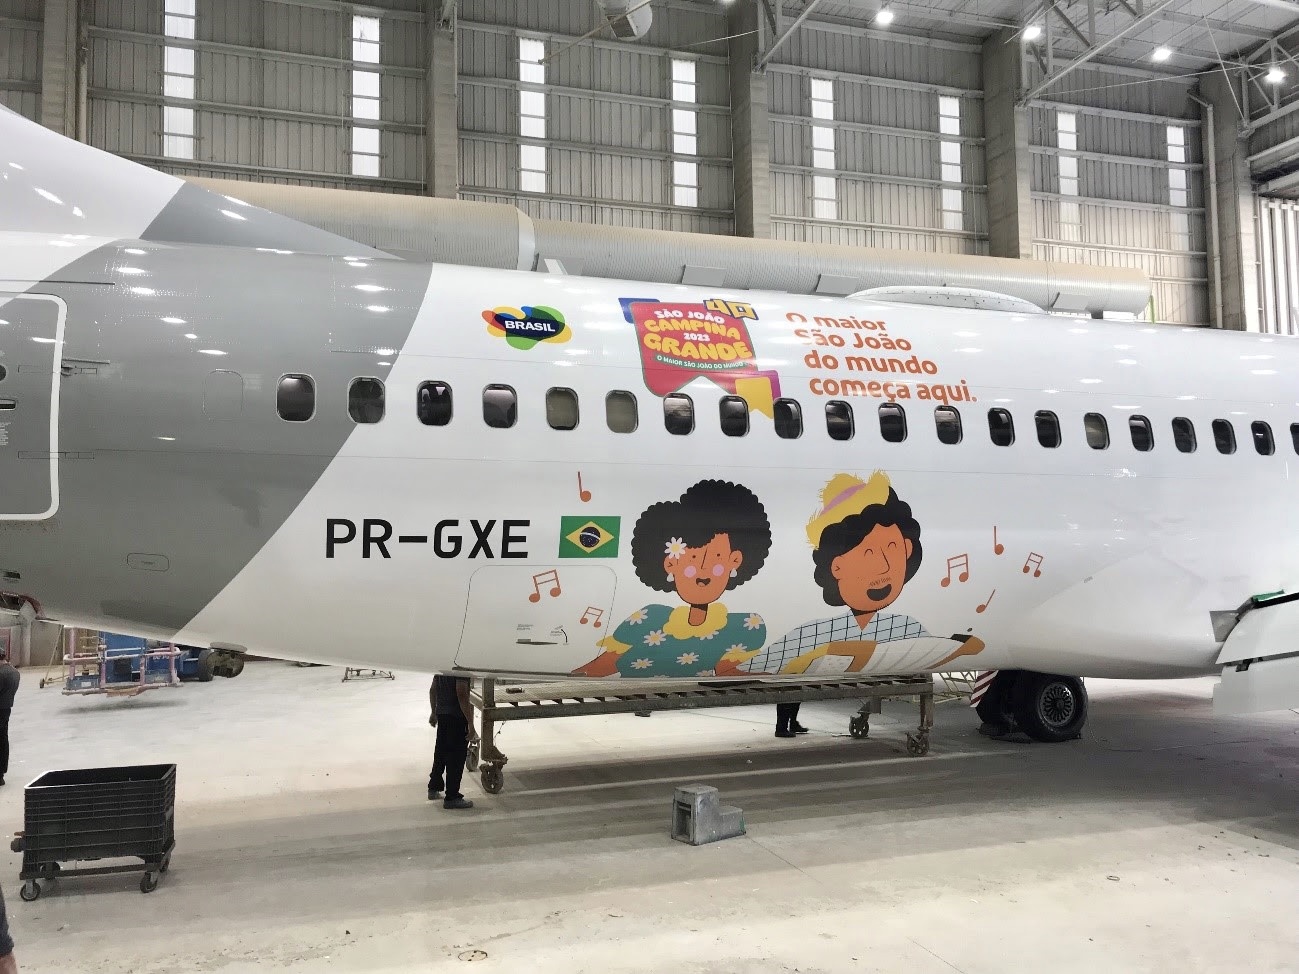 Gol adesiva 737 em homenagem ao "Maior São João do Mundo"